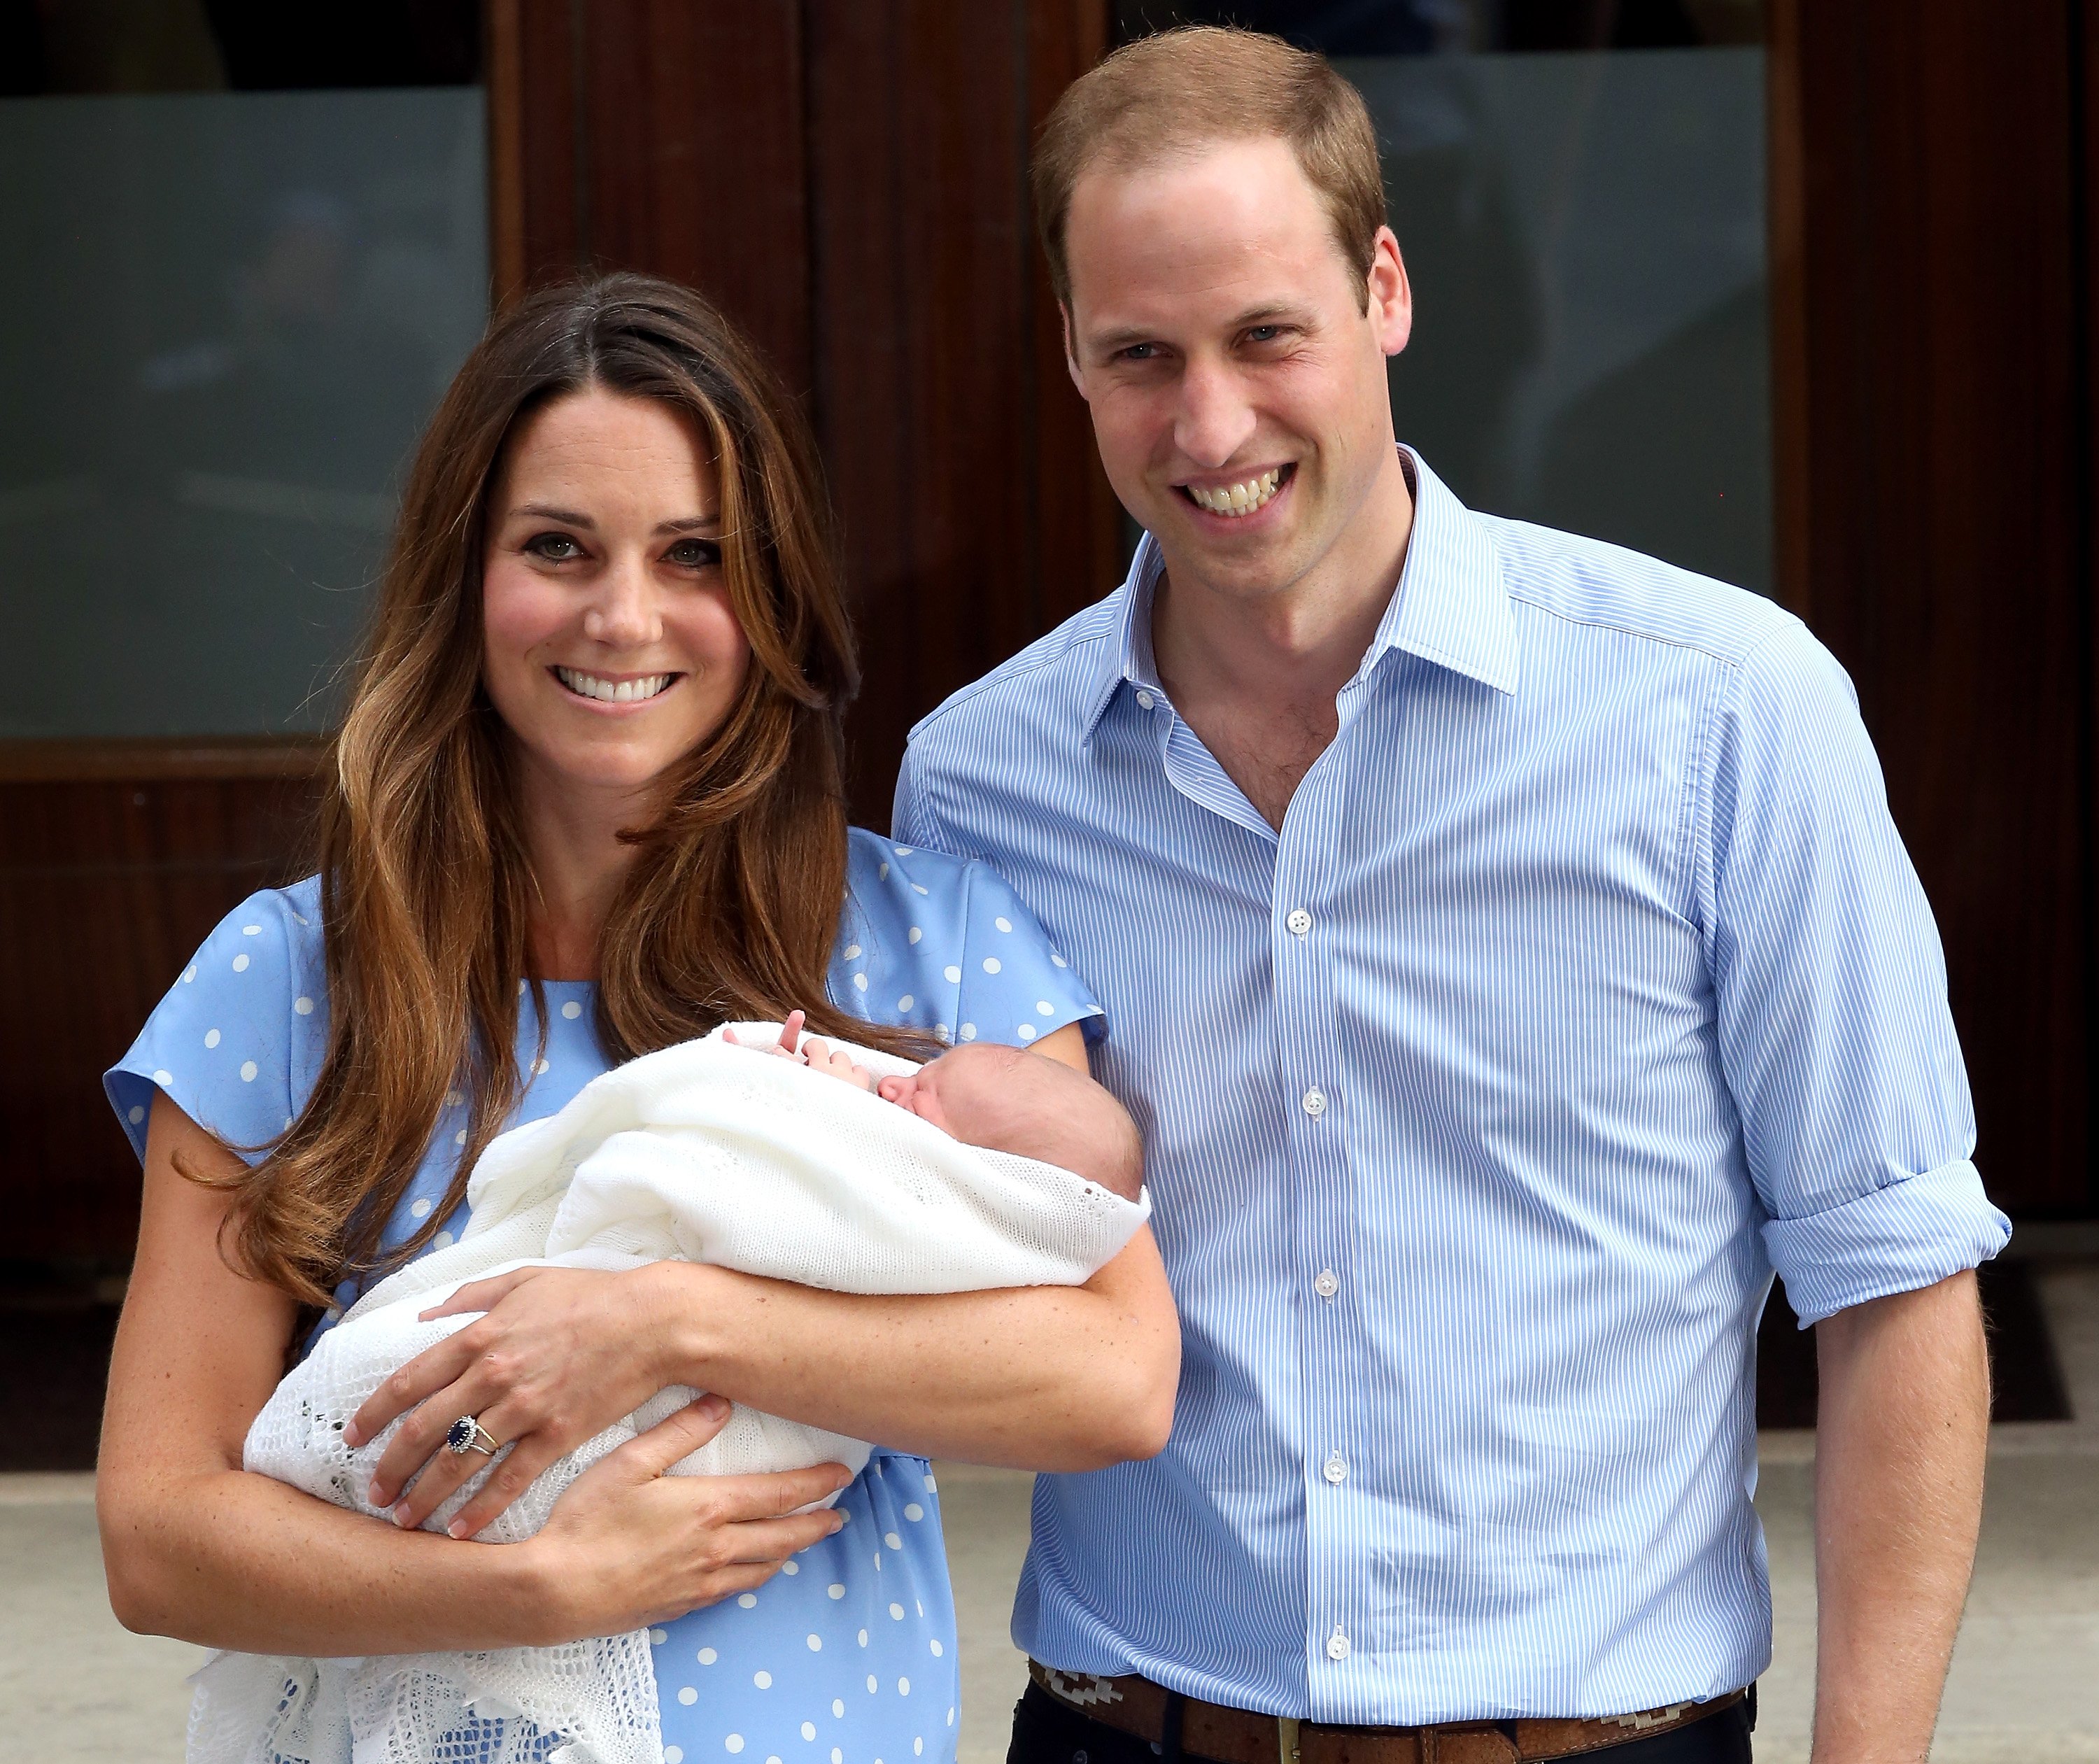 Prinz William, Herzog von Cambridge, und Catherine, Herzogin von Cambridge, verlassen am 23. Juli 2013 mit ihrem neugeborenen Sohn den Lindo-Flügel im St. Mary's Hospital in London, England. | Quelle: Getty Images